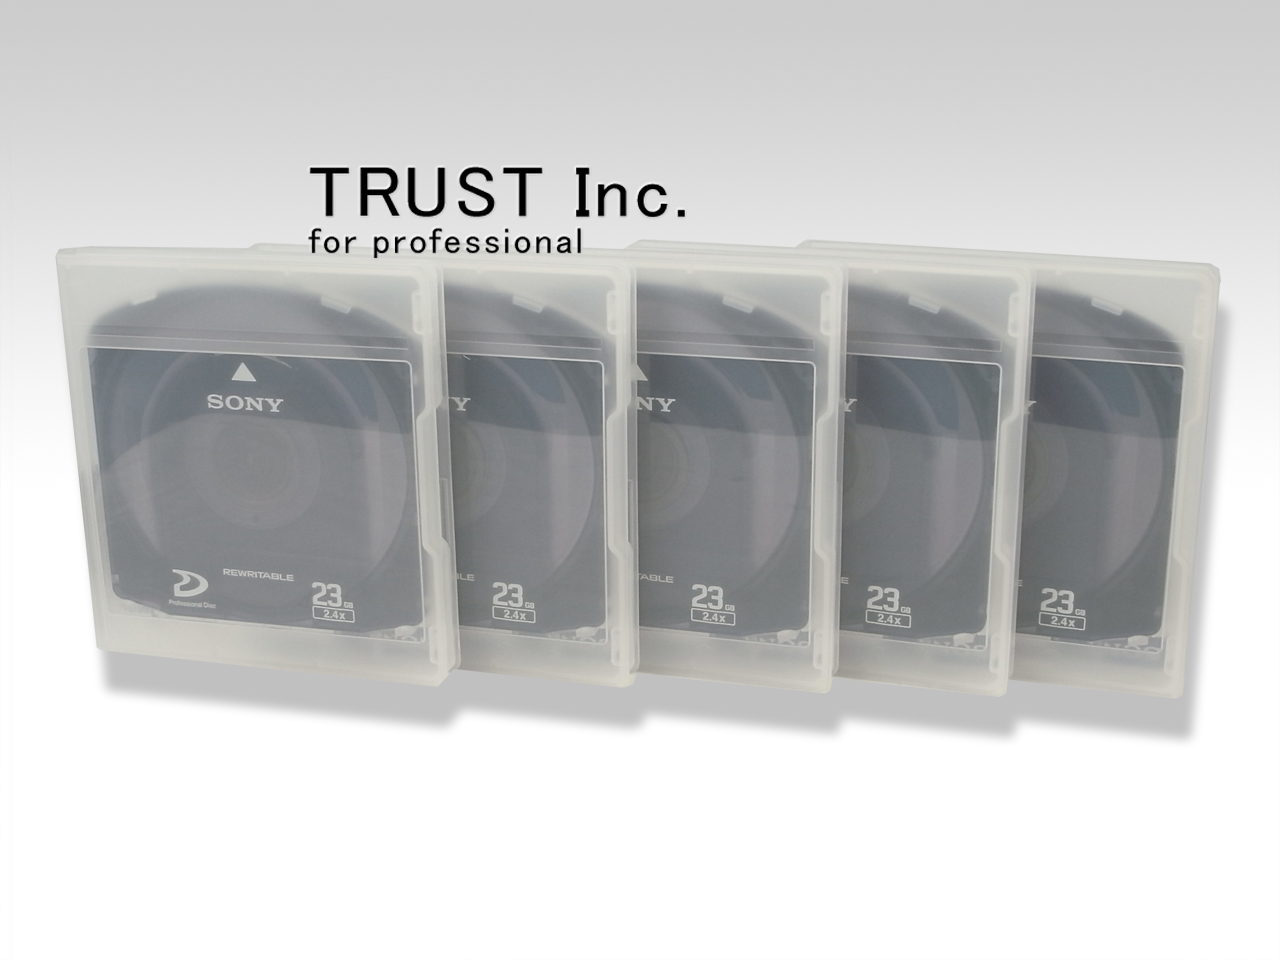 品質保証 SONY XDCAM用 Professional Disc 23GB 5巻セット - カメラ - zir.clinic